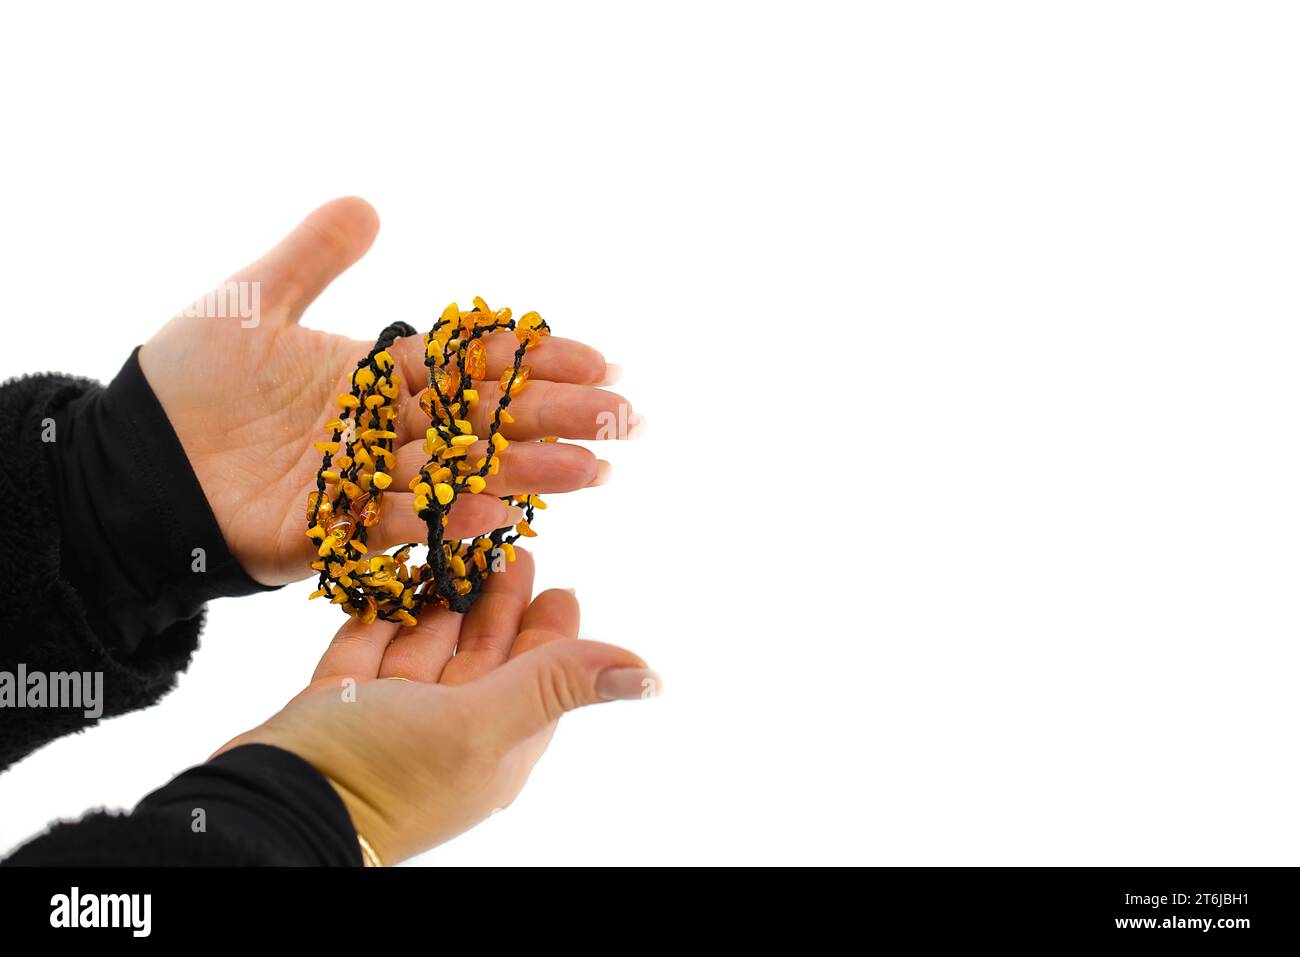 L'image représente un collier en ambre poli sur un cordon noir, délicatement tenu dans des mains féminines. Les teintes dorées contrastent avec le noir. Banque D'Images